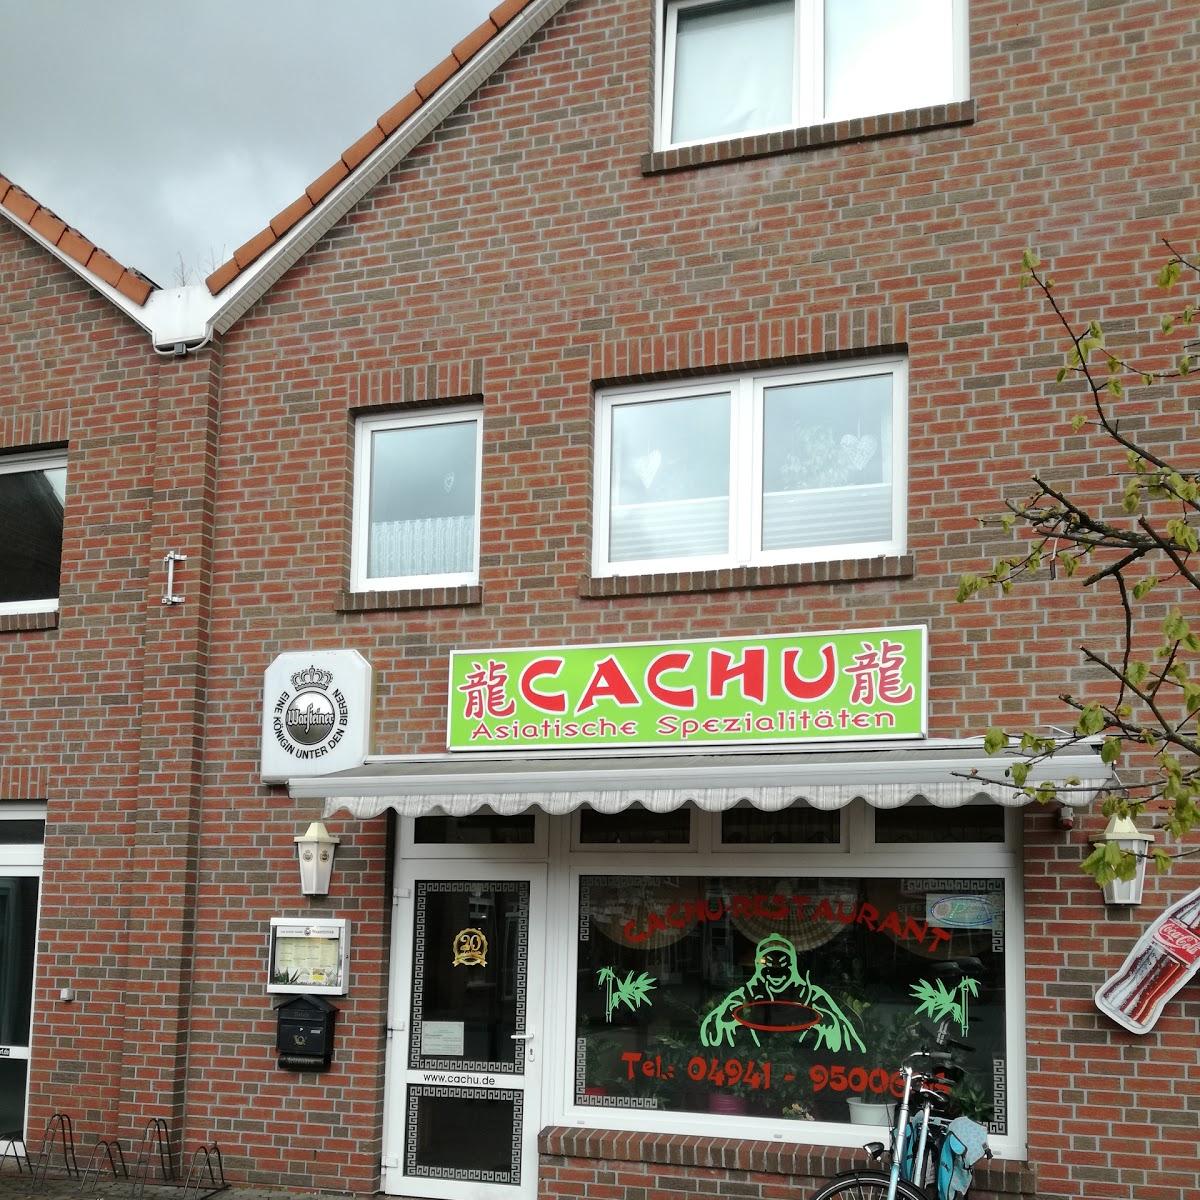 Restaurant "Cachu" in  Südbrookmerland